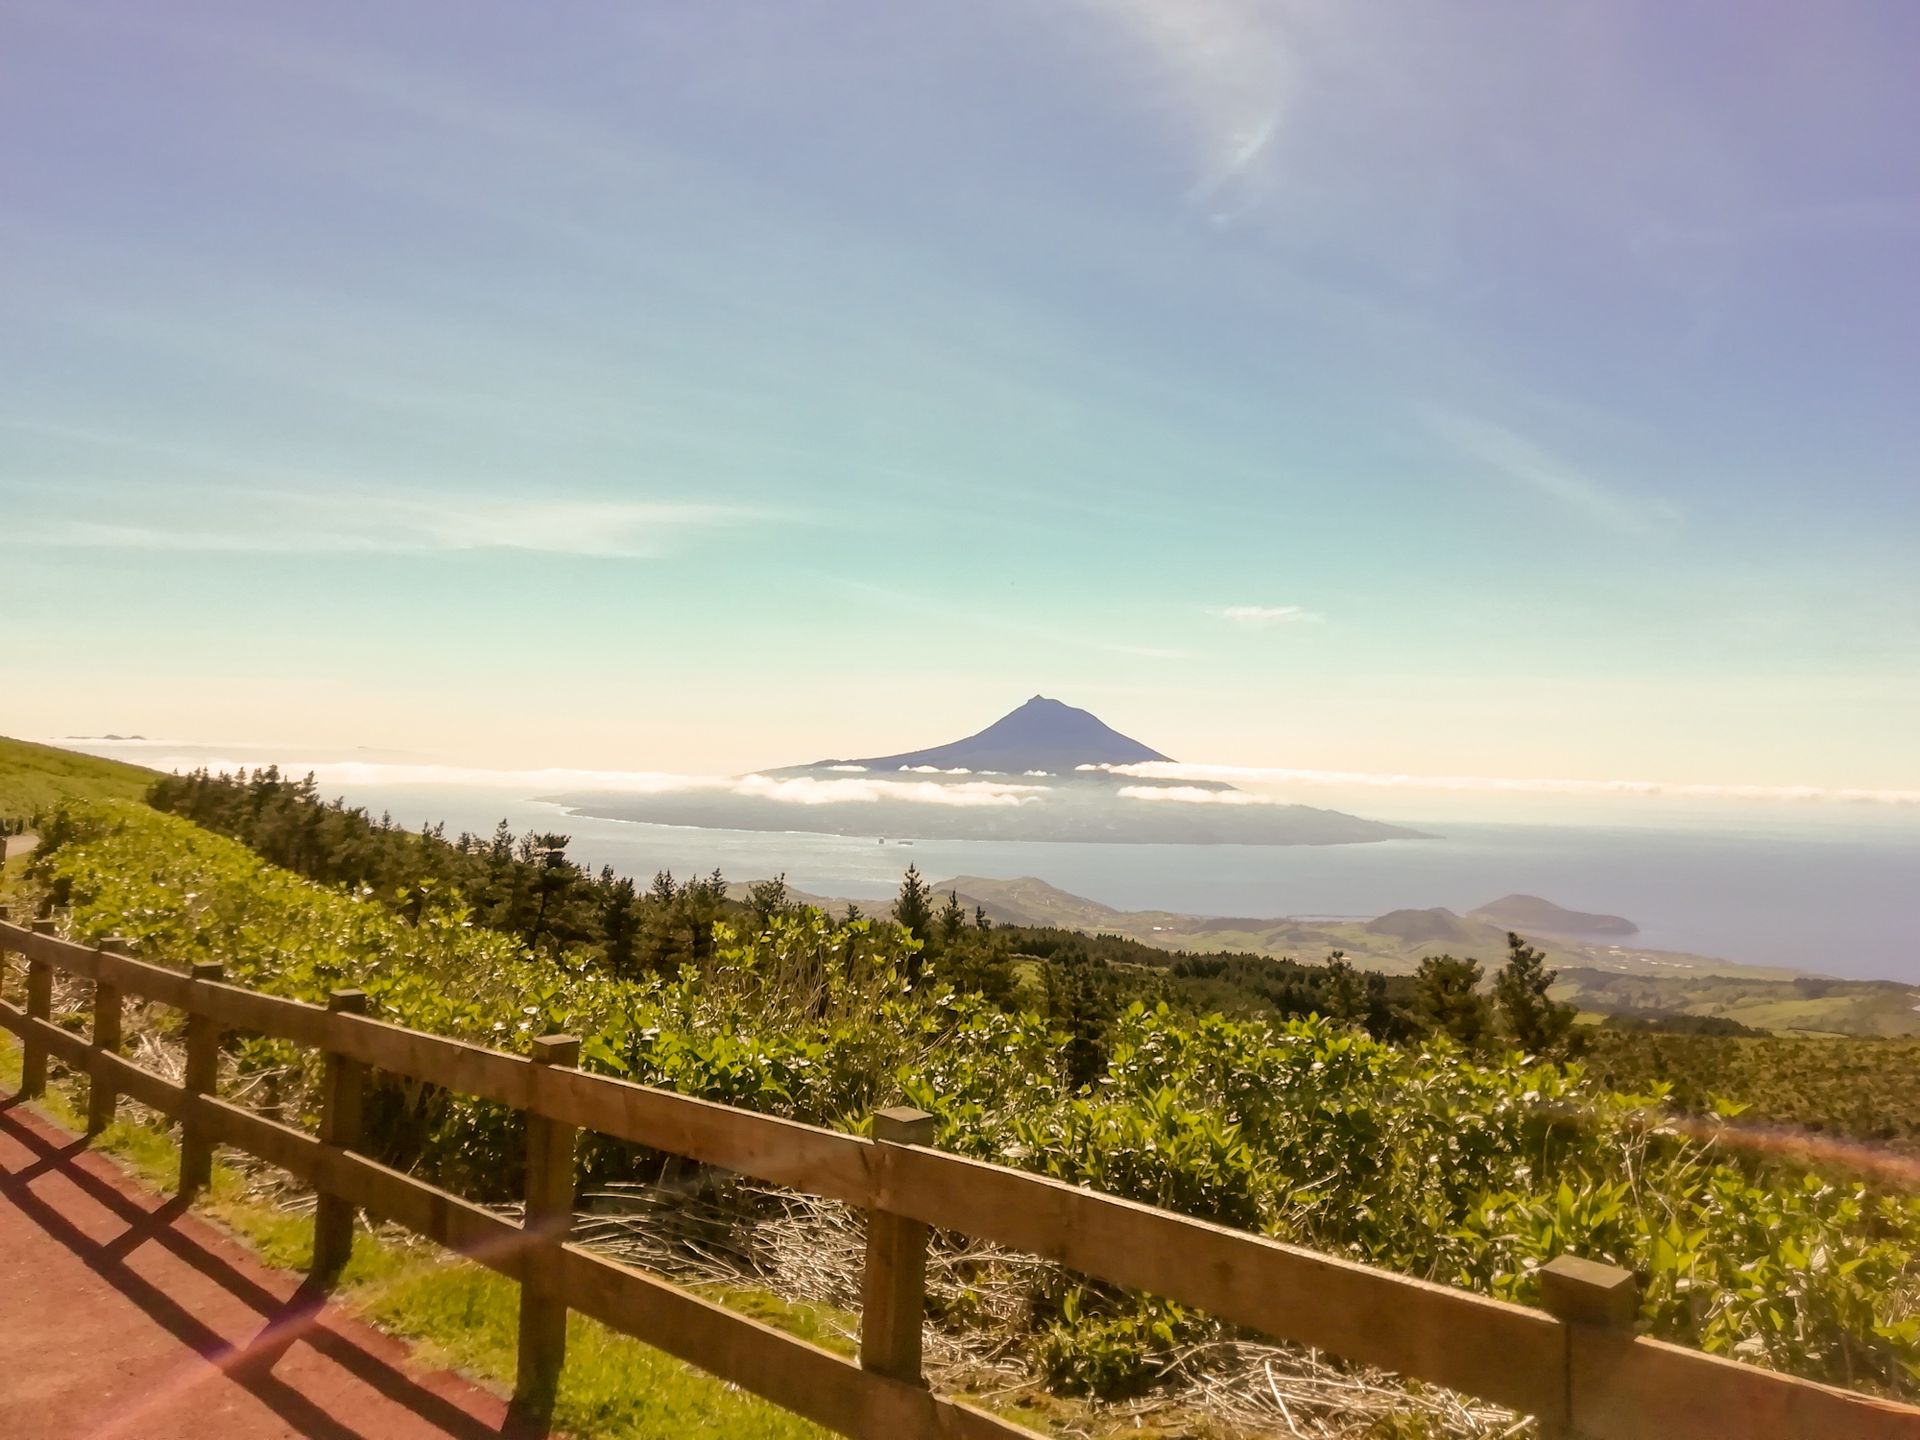 Visita à Caldeira do Faial com vista para o Pico nas nossas Excursões, Tours e Visitas Guiadas de meio dia na ilha do Faial Açores.